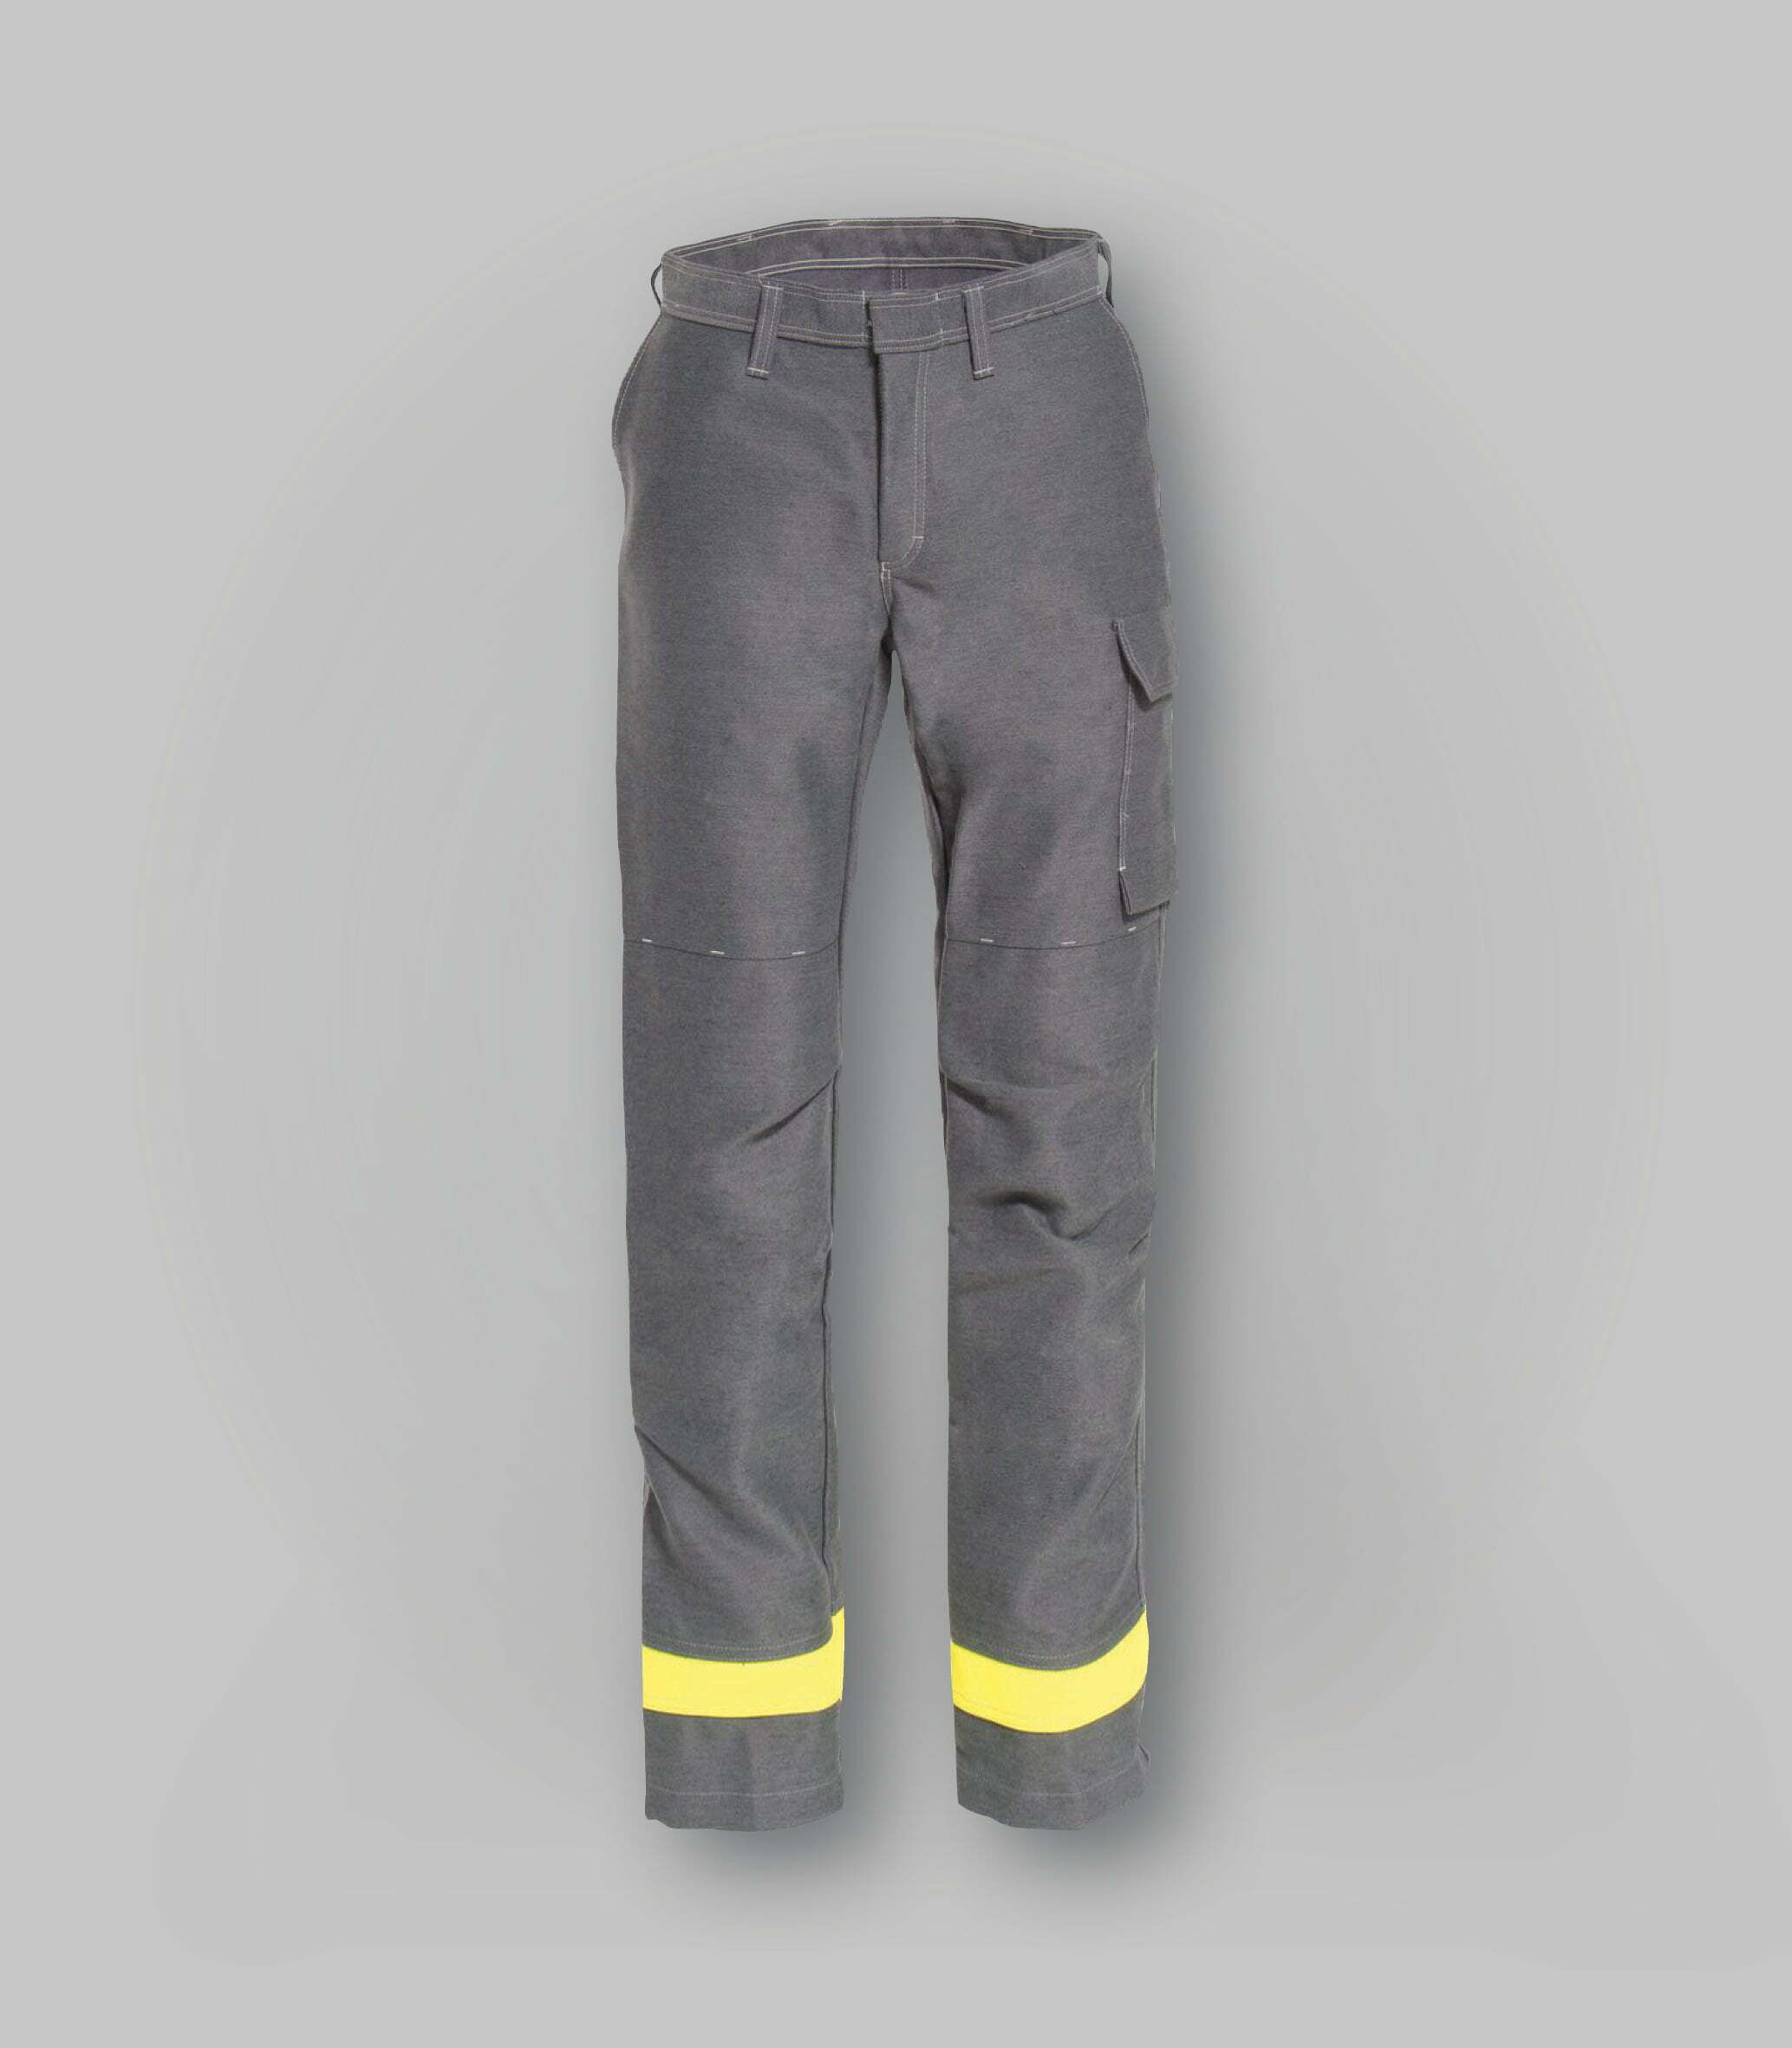 Pantaloni ignifughi per saldatura | TR552286.GR